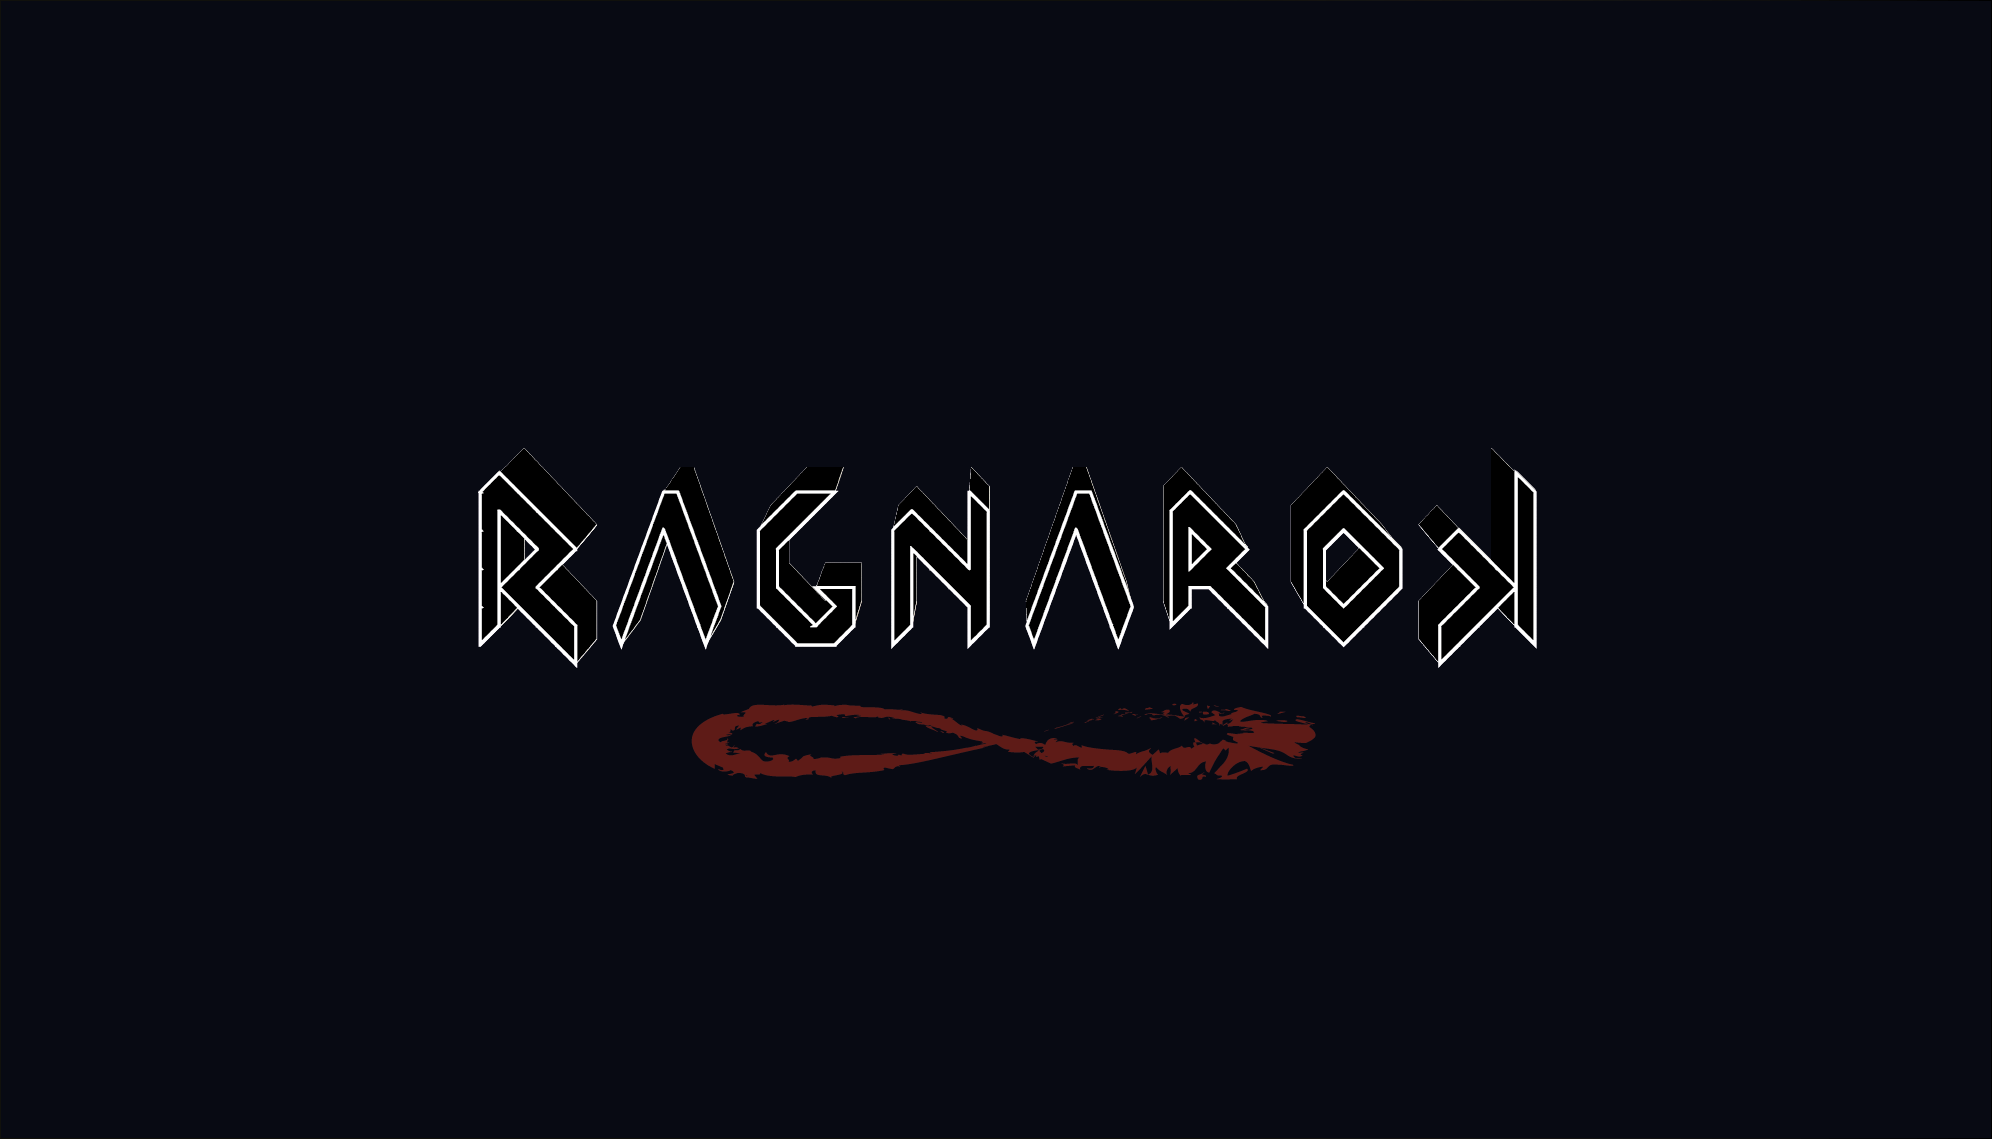 logo_ragnarok_3d_negro.png